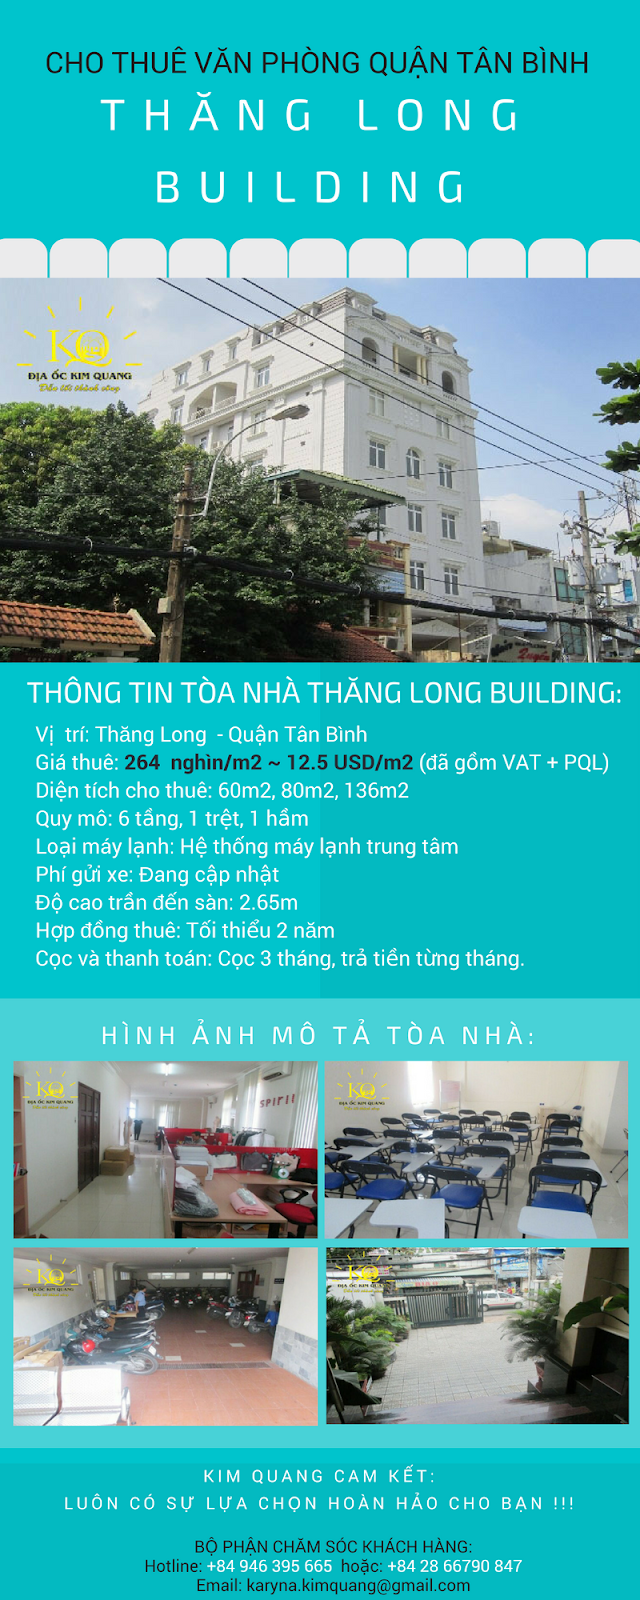 Thăng Long Building quận Tân Bình